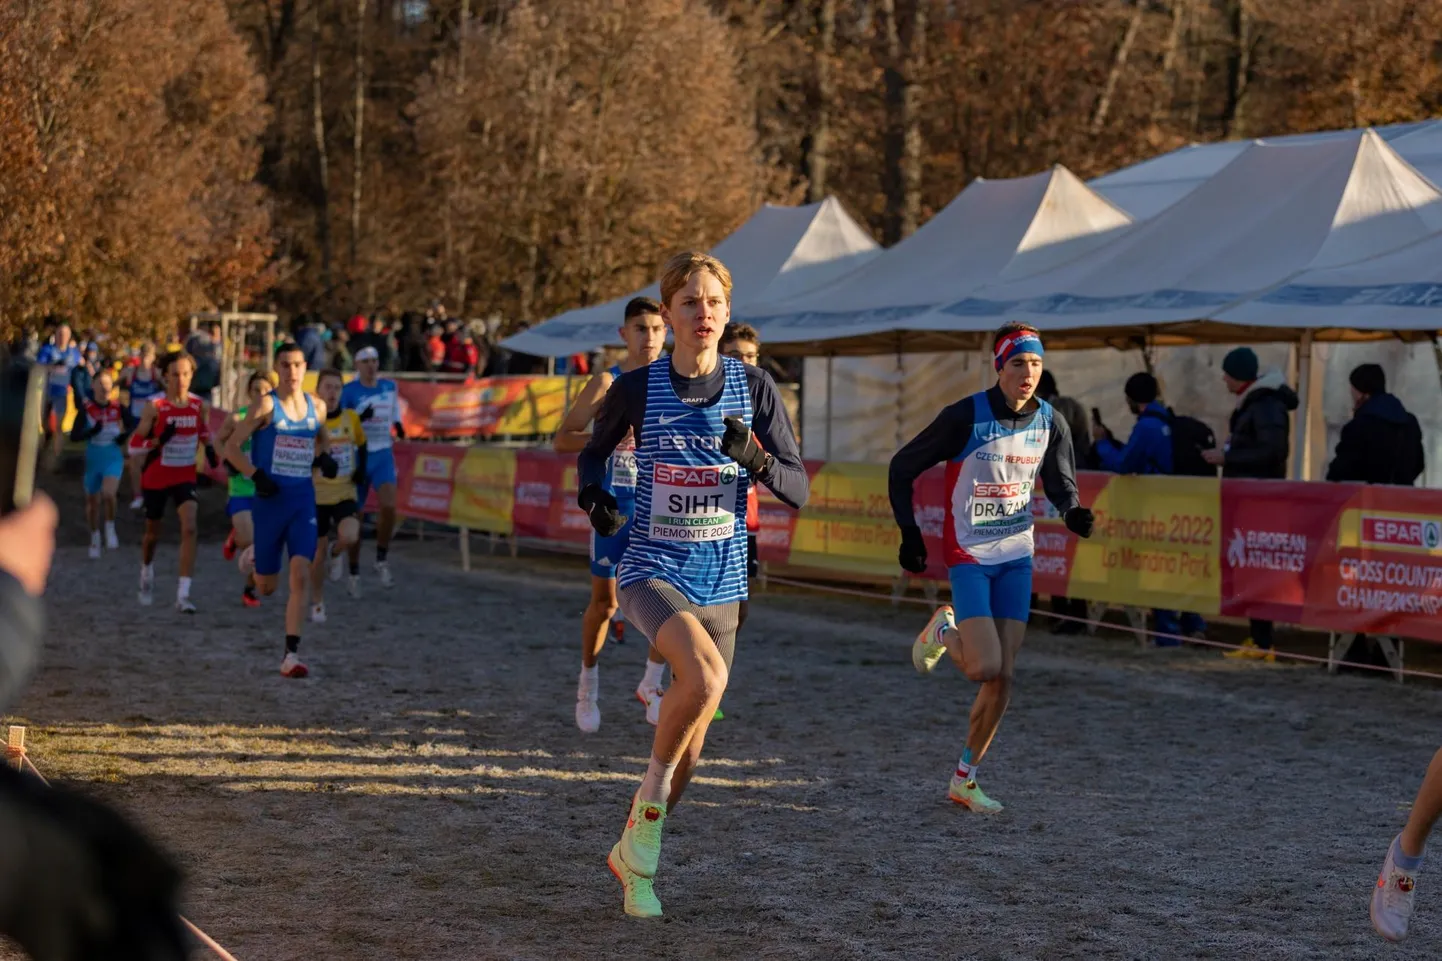 Viljandist pärit Morten Siht asub pühapäeval jooksma Brüsselis Euroopa meistrivõistlustel.